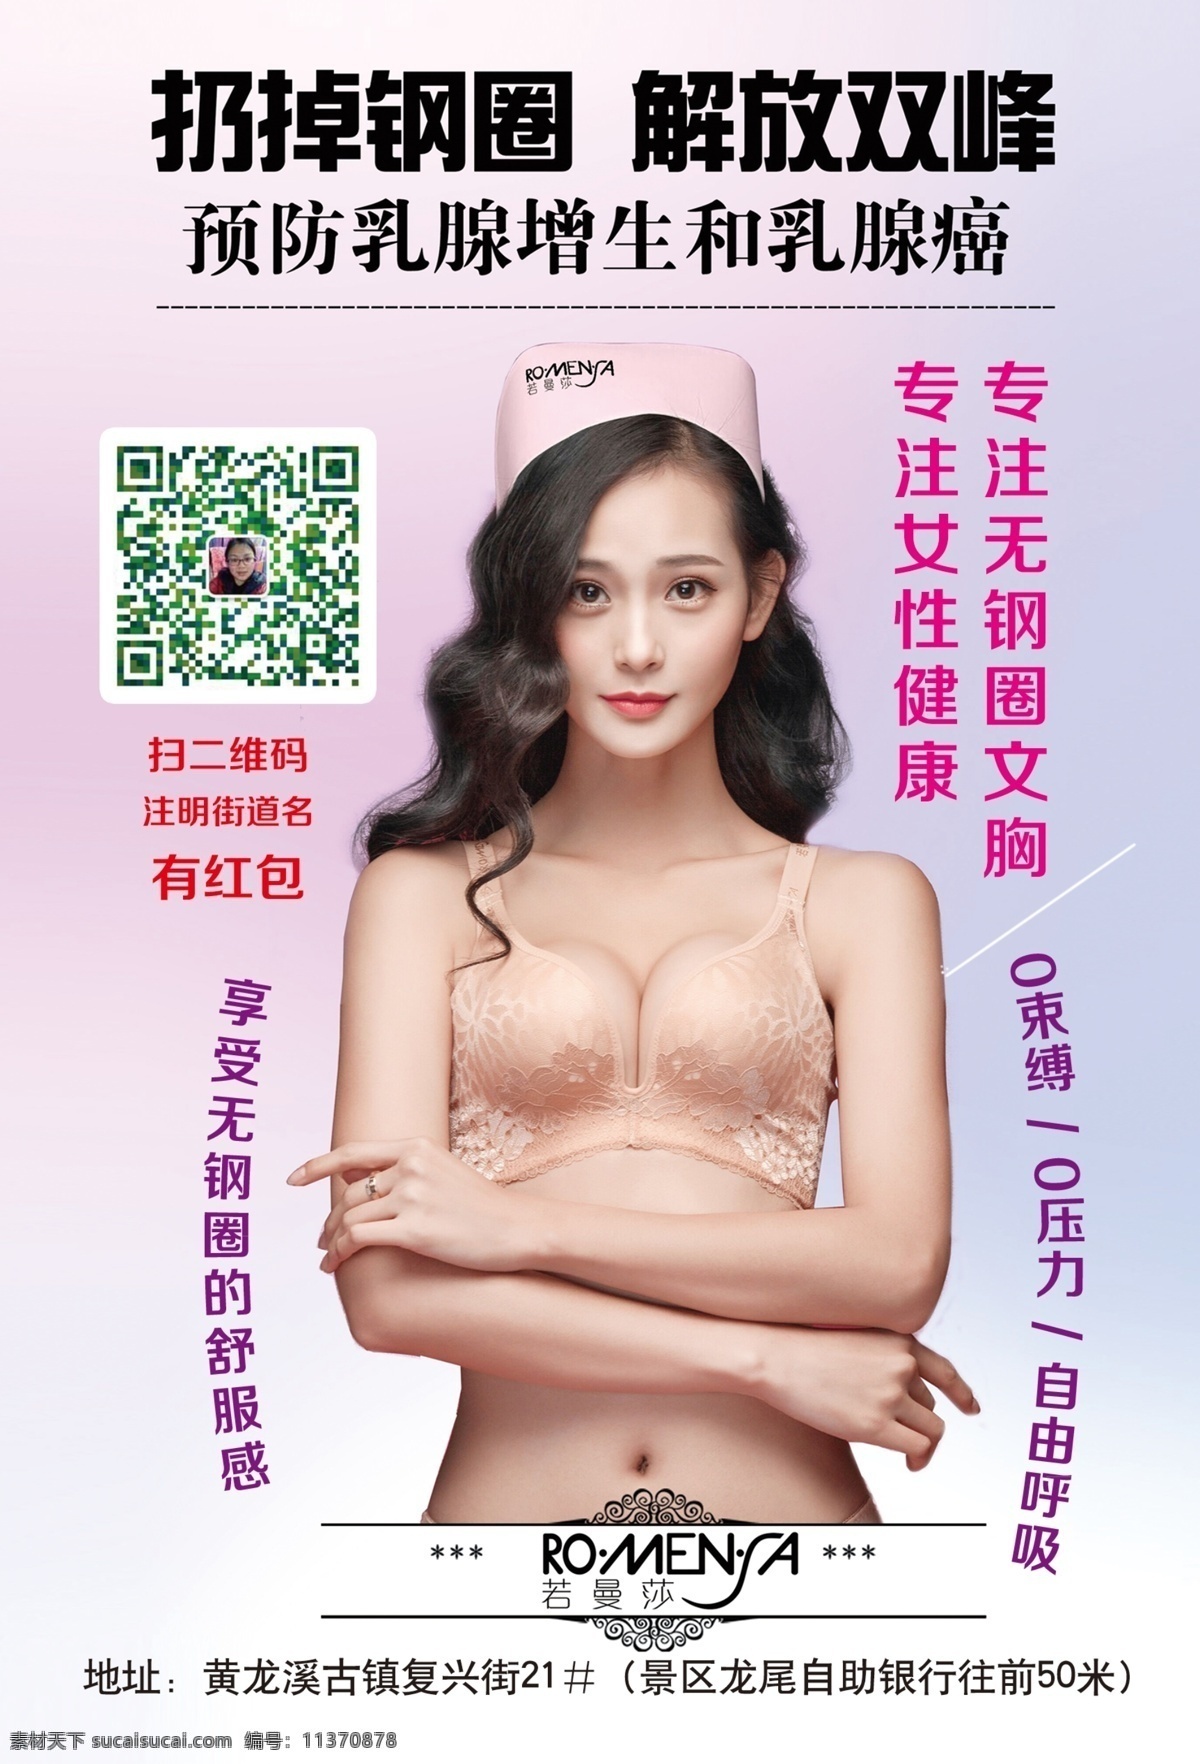 内衣宣传单 内衣广告 无钢圈 若曼莎 预防 乳腺增生 女性健康 dm宣传单